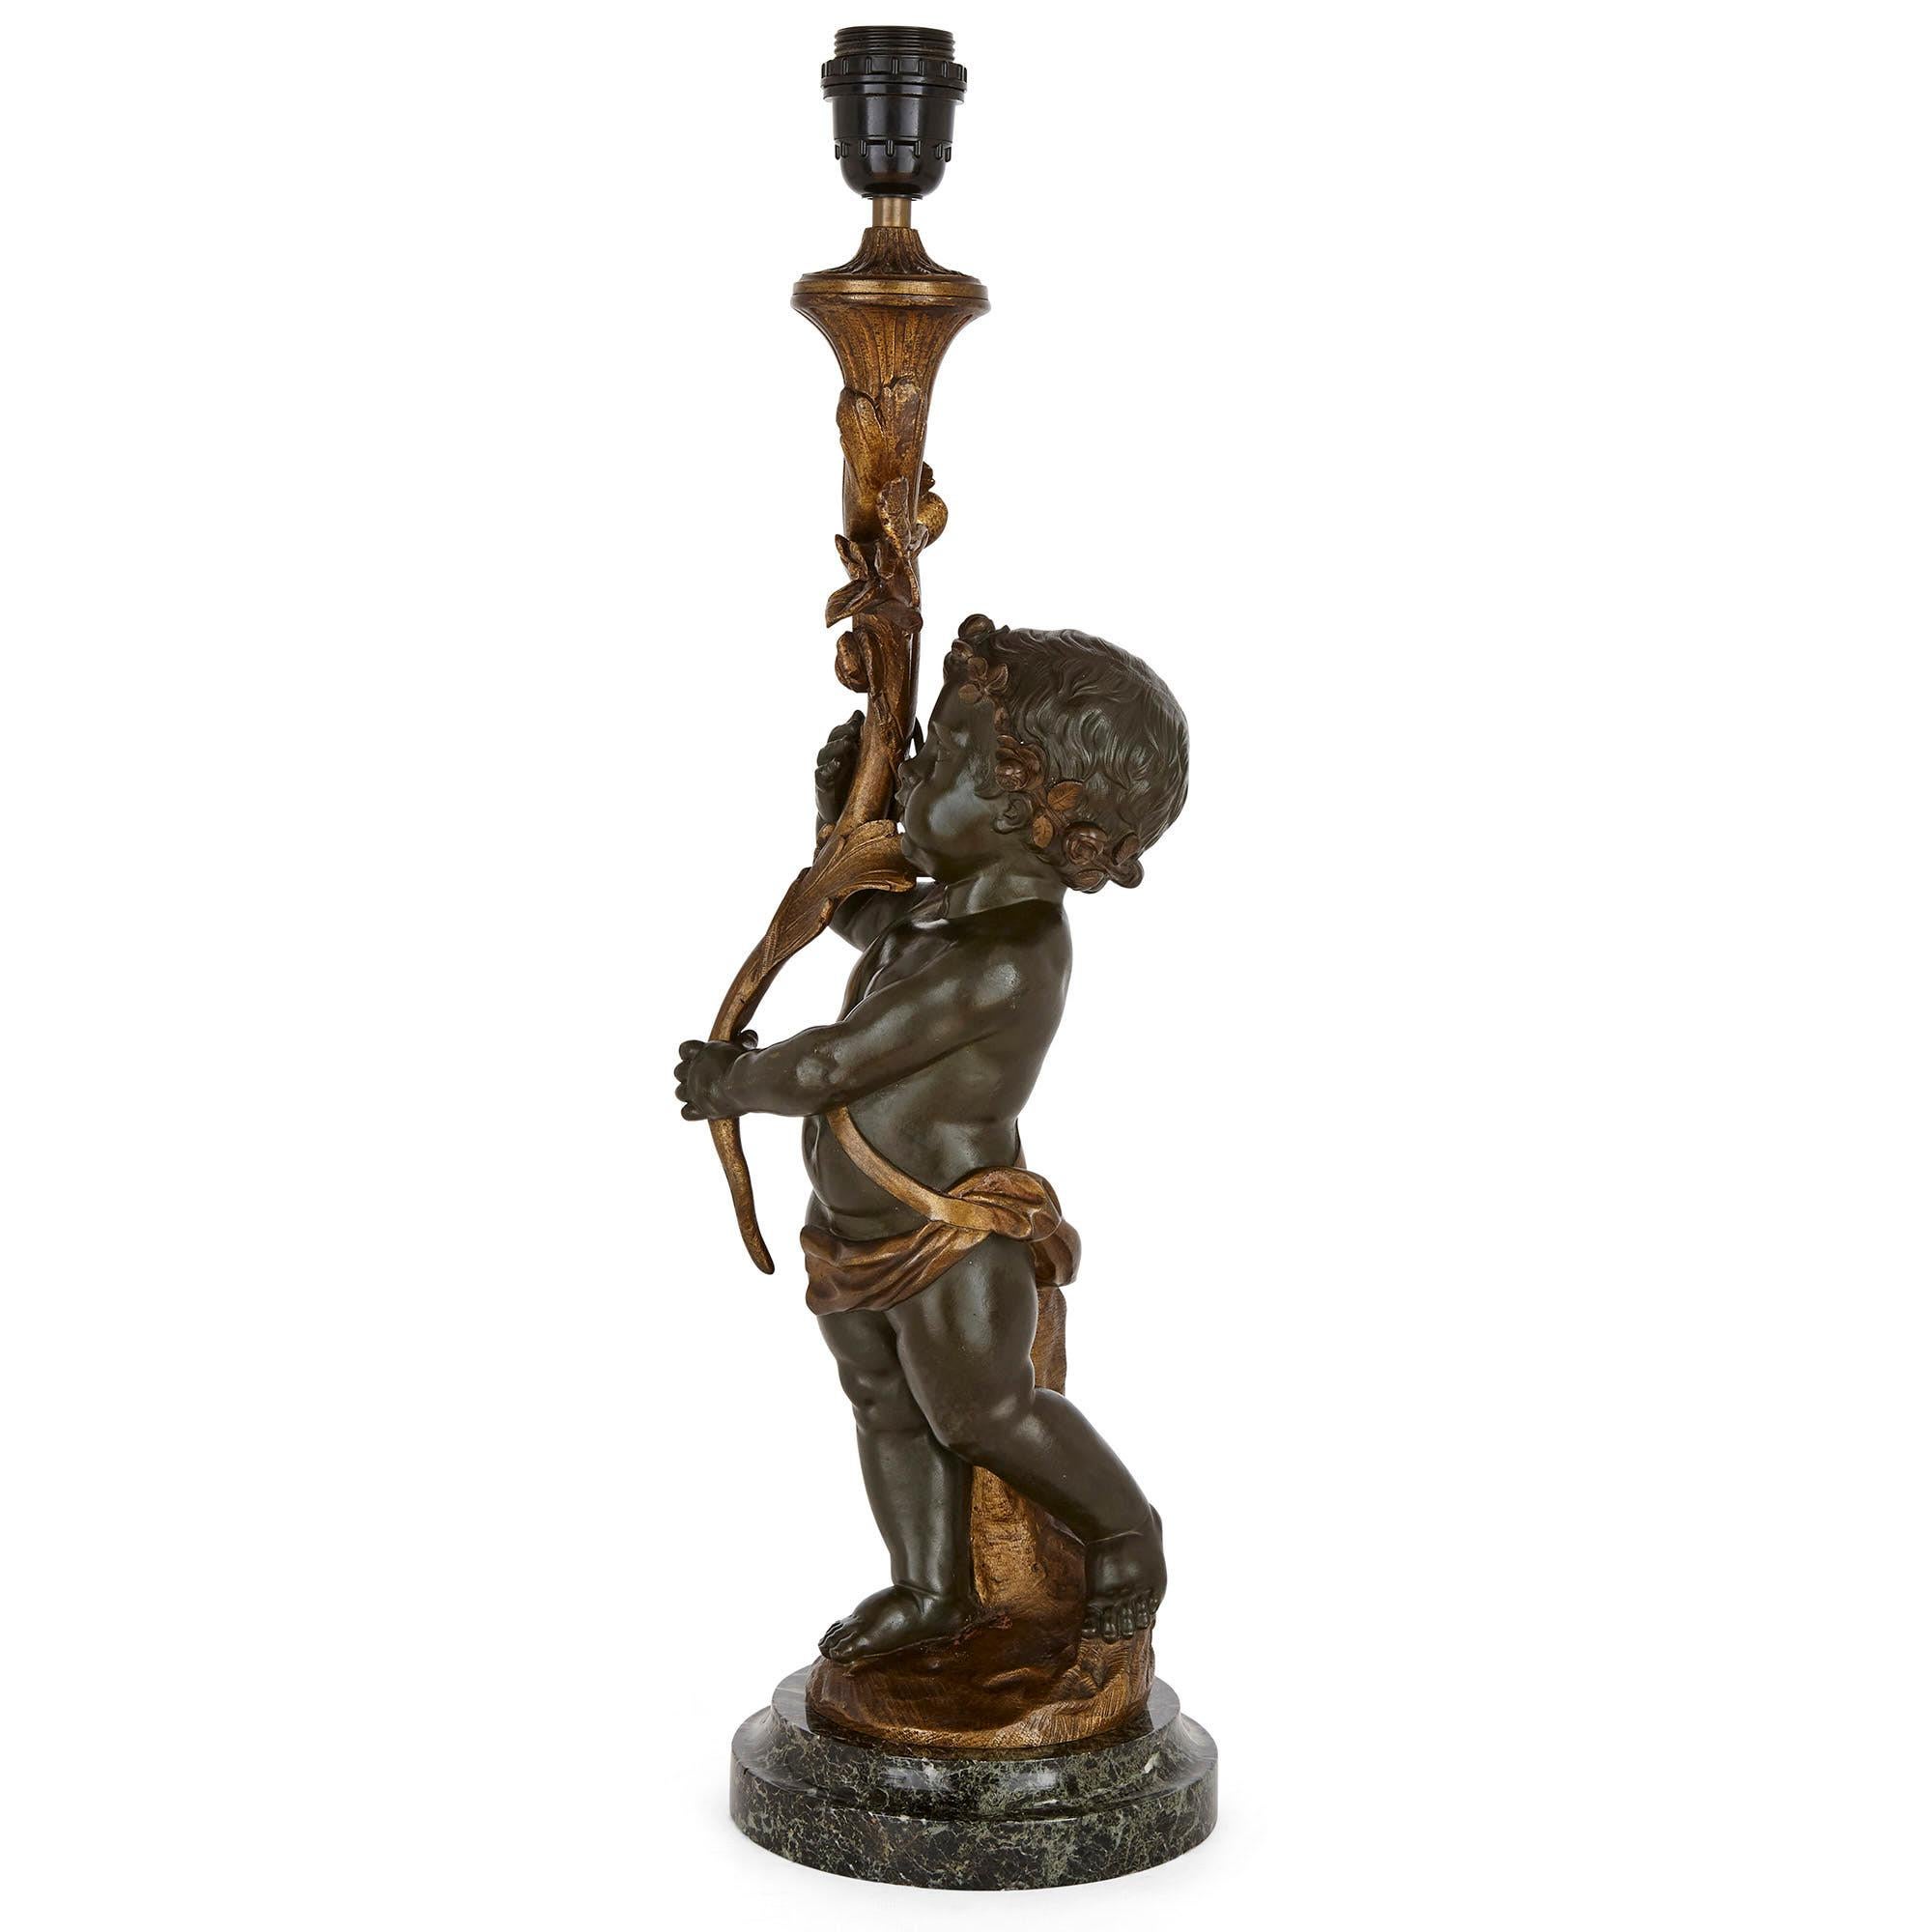 Französische Lampe aus patinierter Bronze in Form eines Putto
Französisch, um 1900
Maße: Höhe 61cm, Durchmesser 18cm

Dieser Putto, der eine Holzlampe hält, ist ein Werk der Belle Époque und zugleich eine funktionierende Lampe. Der aus